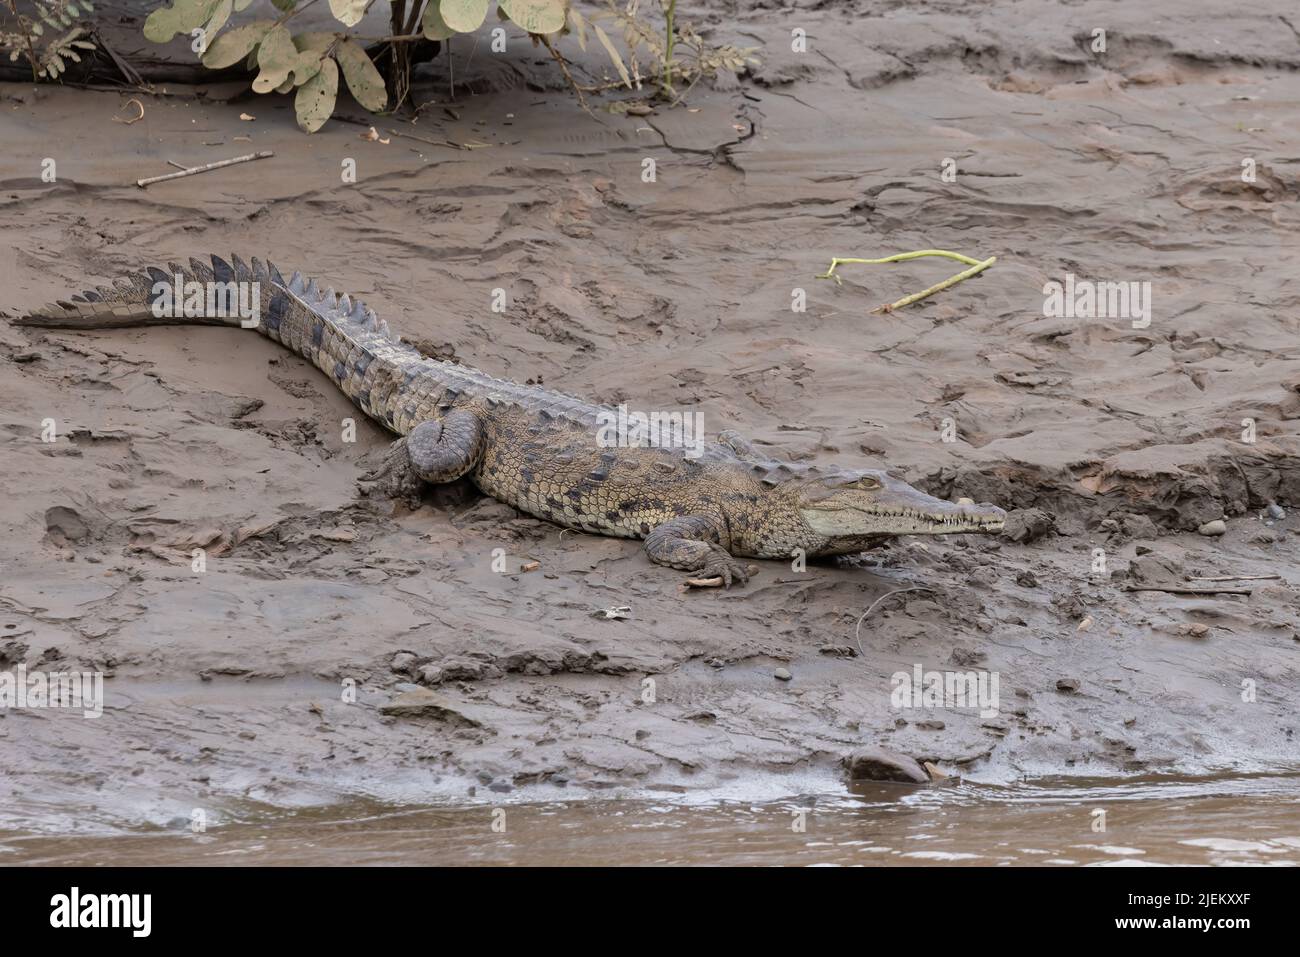 Crocodiles in Costa Rica getting some sun. Stock Photo